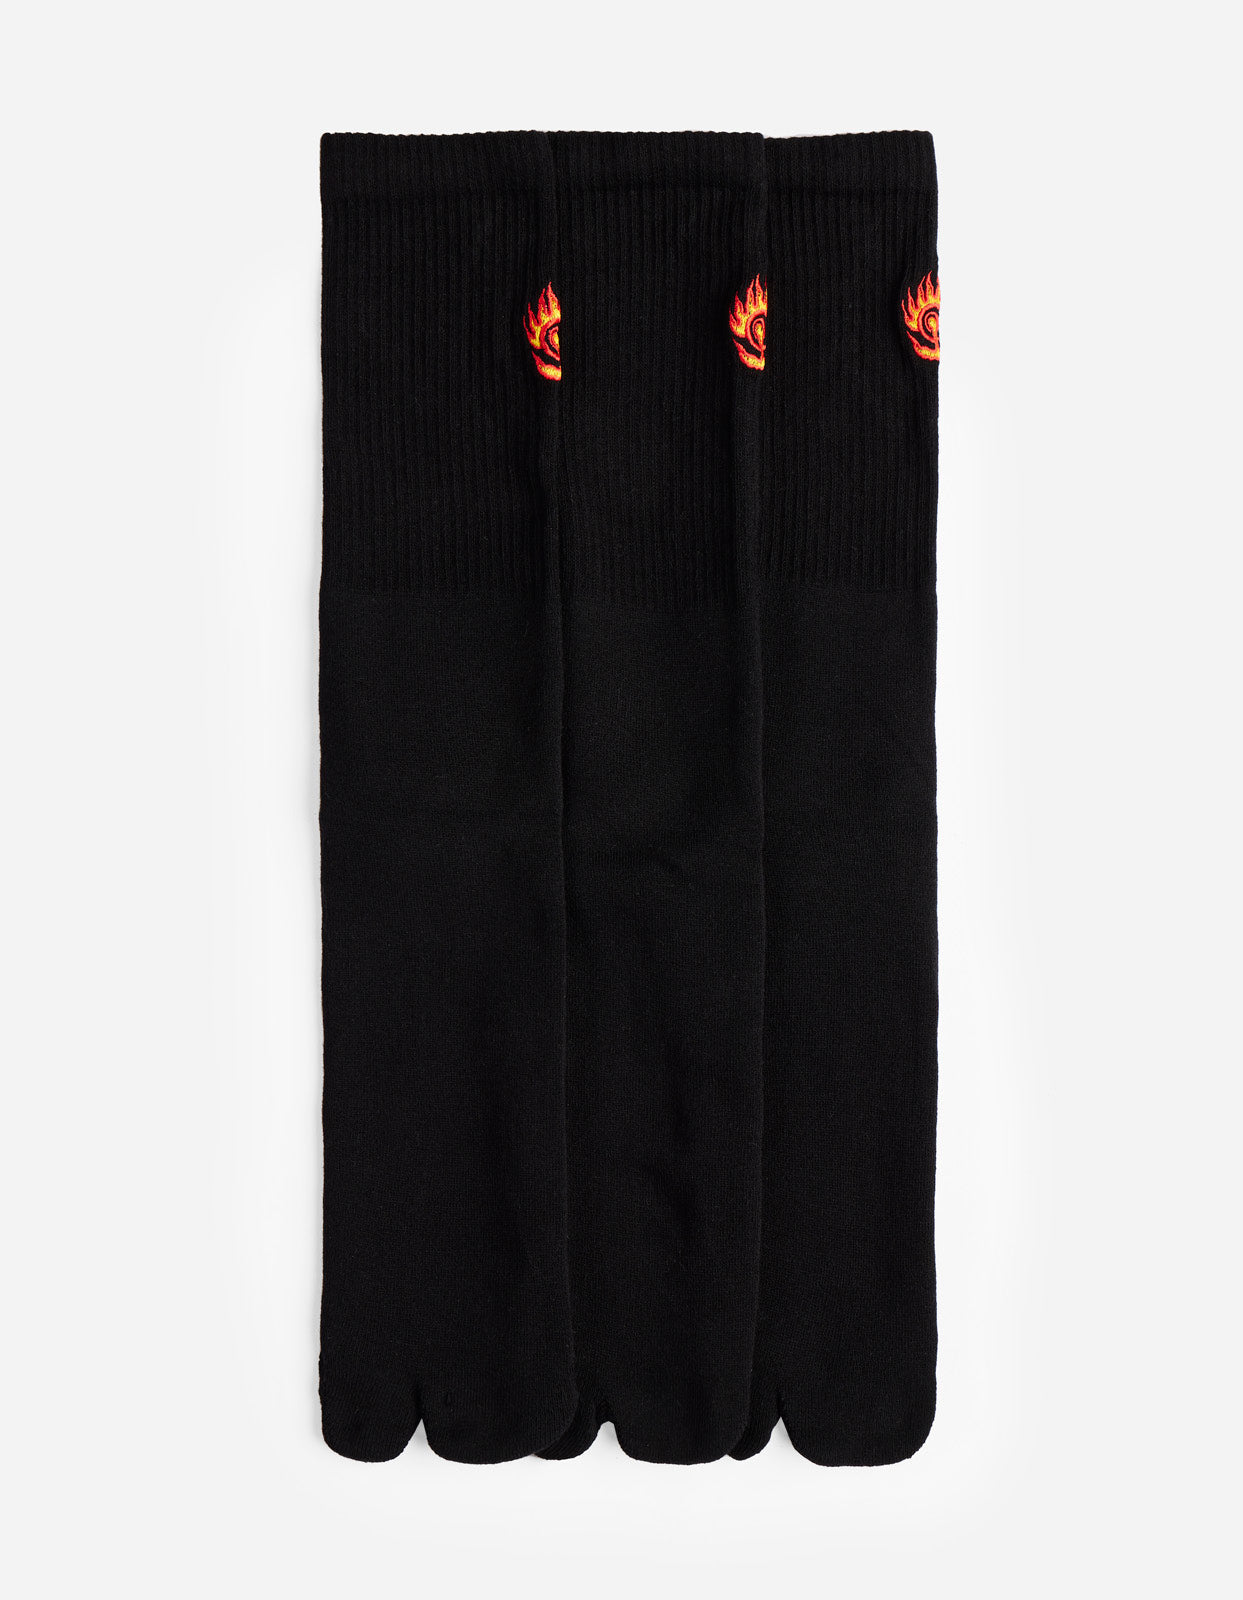 1263 Micro Dragon Tabi Sock 3 Pack Black/Black/Black